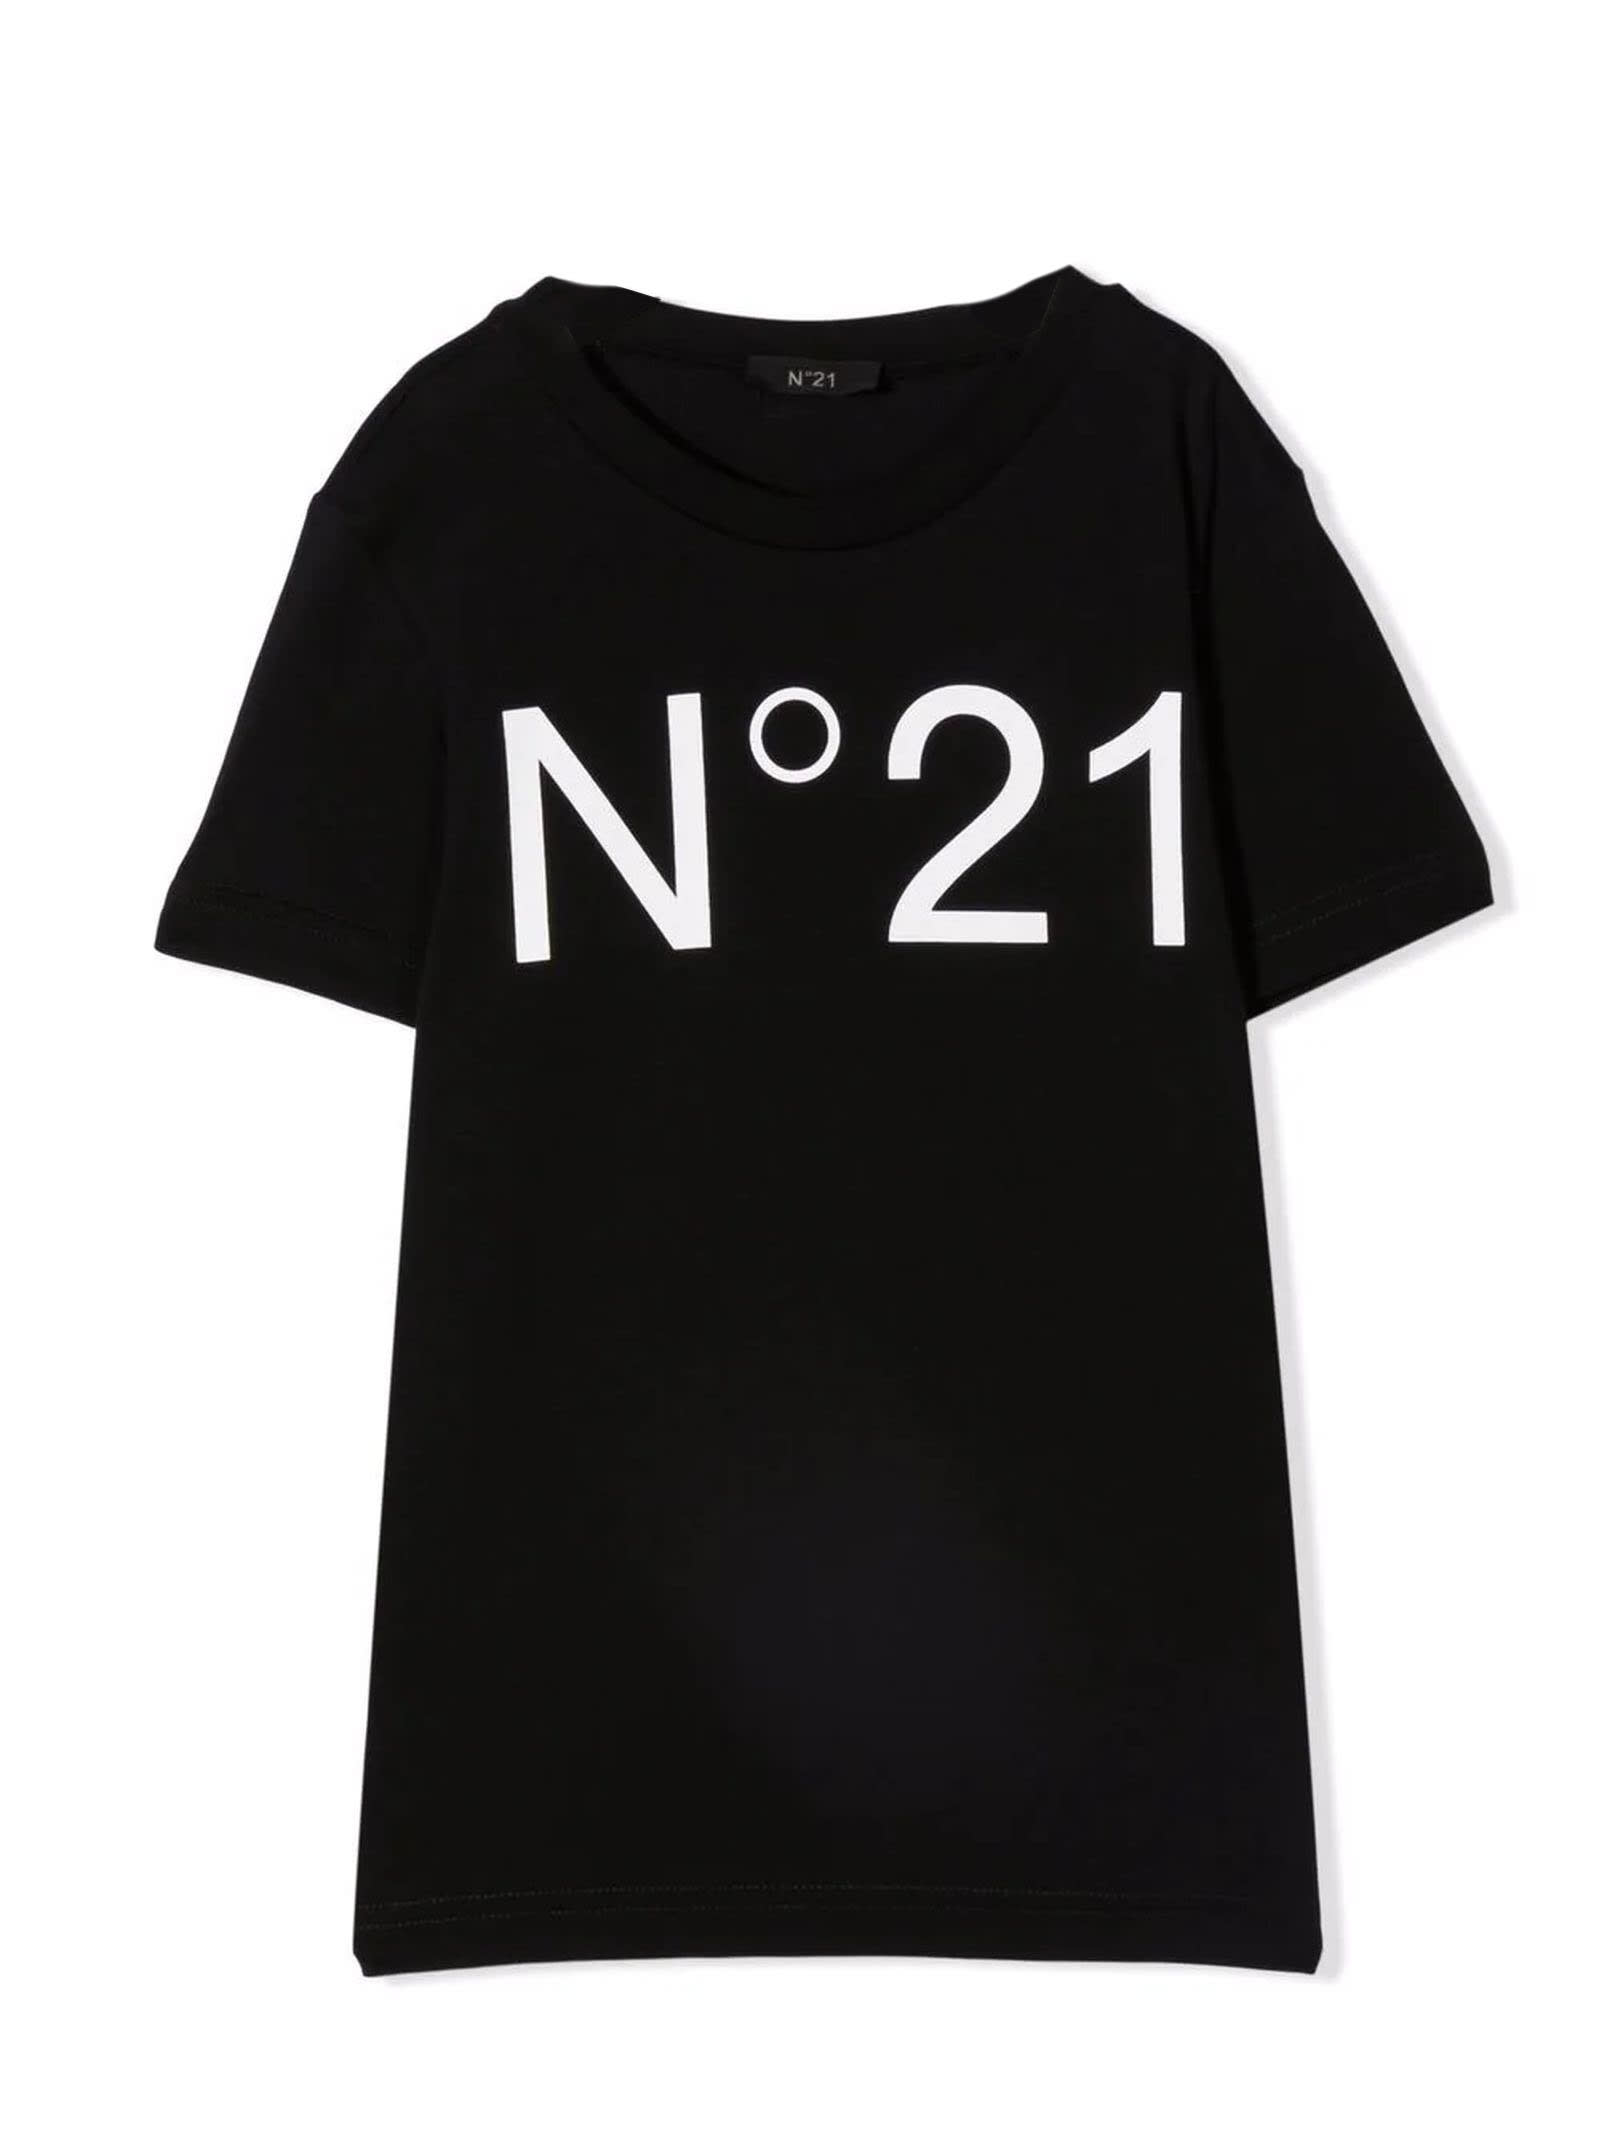 N.21 Black Cotton Tshirt